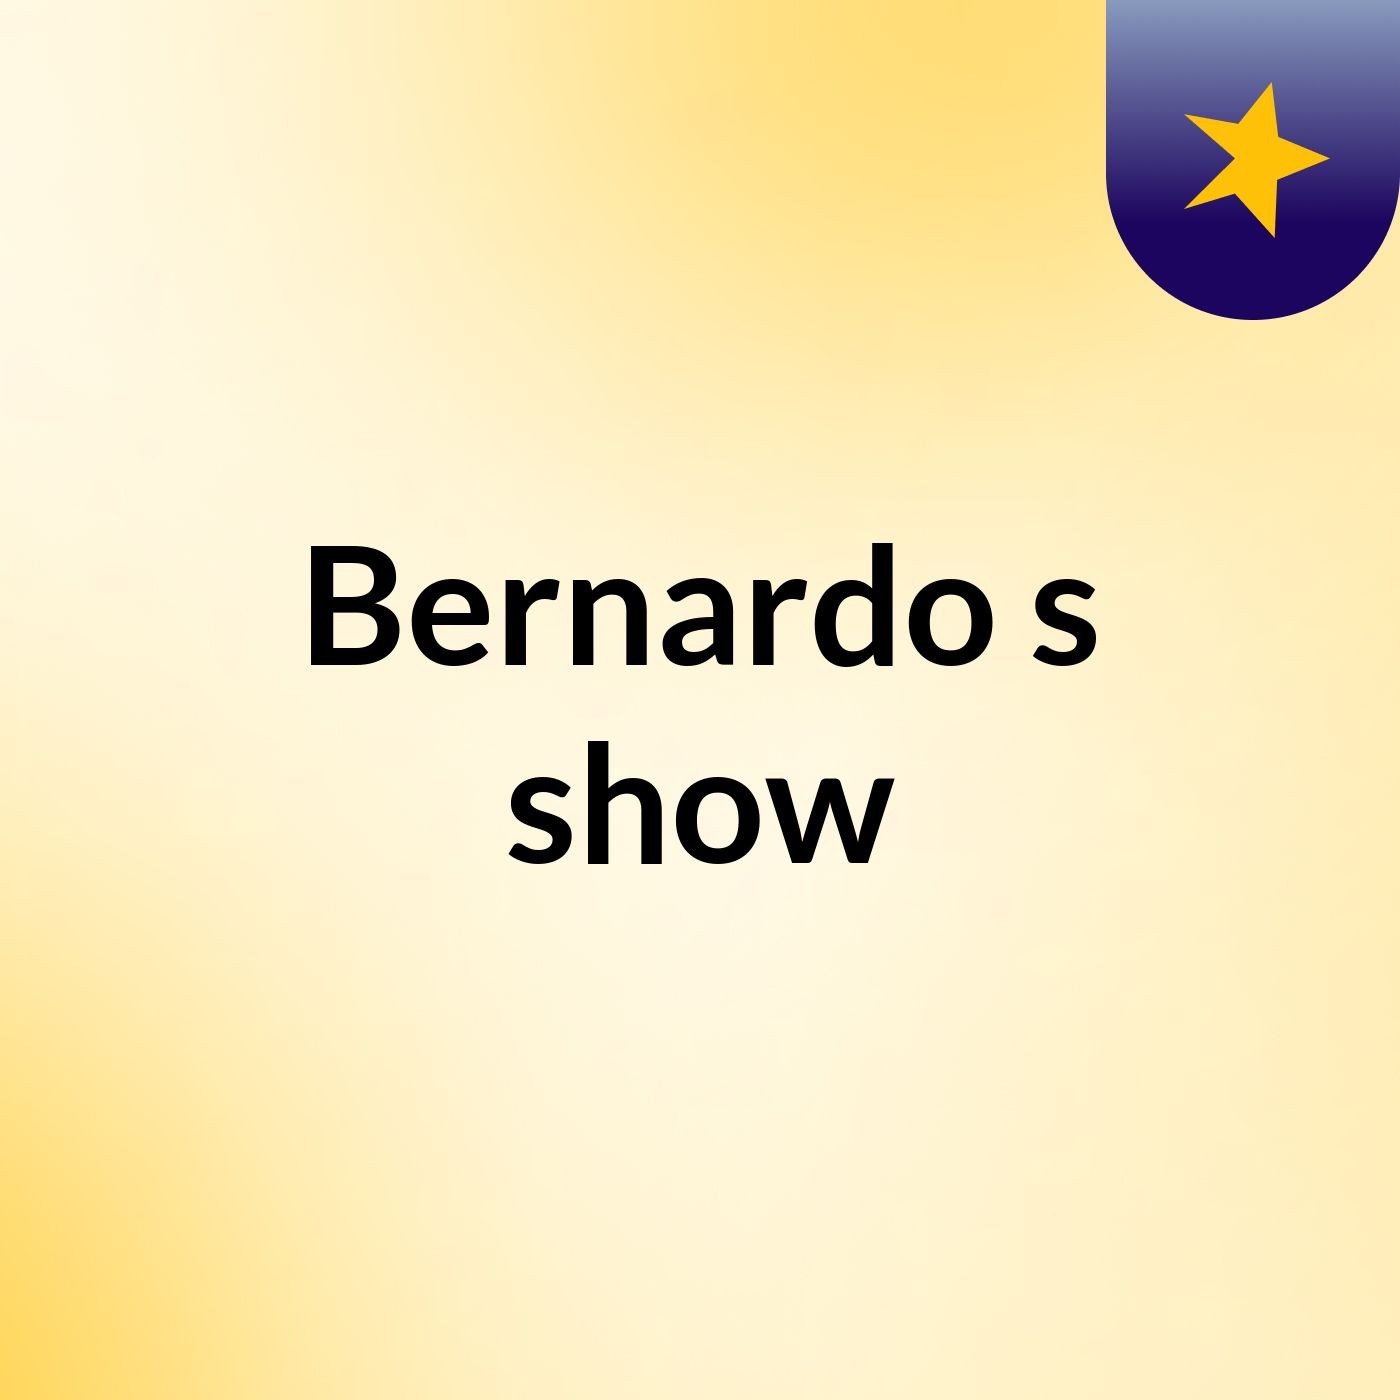 Bernardo's show